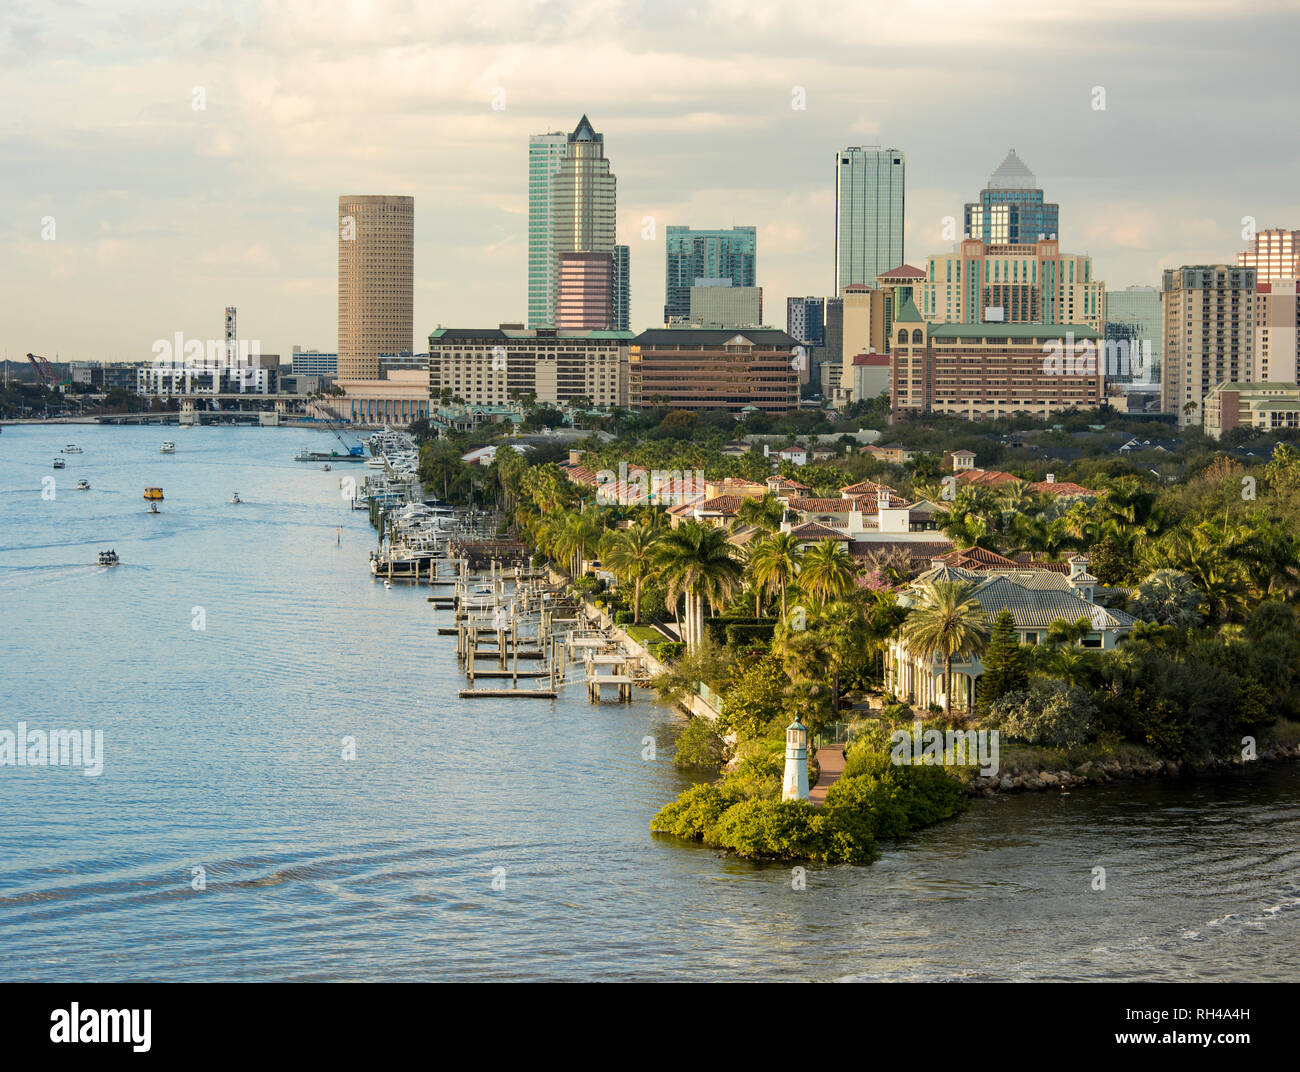 Vista del centro de Tampa, Florida desde el puerto. Foto de stock